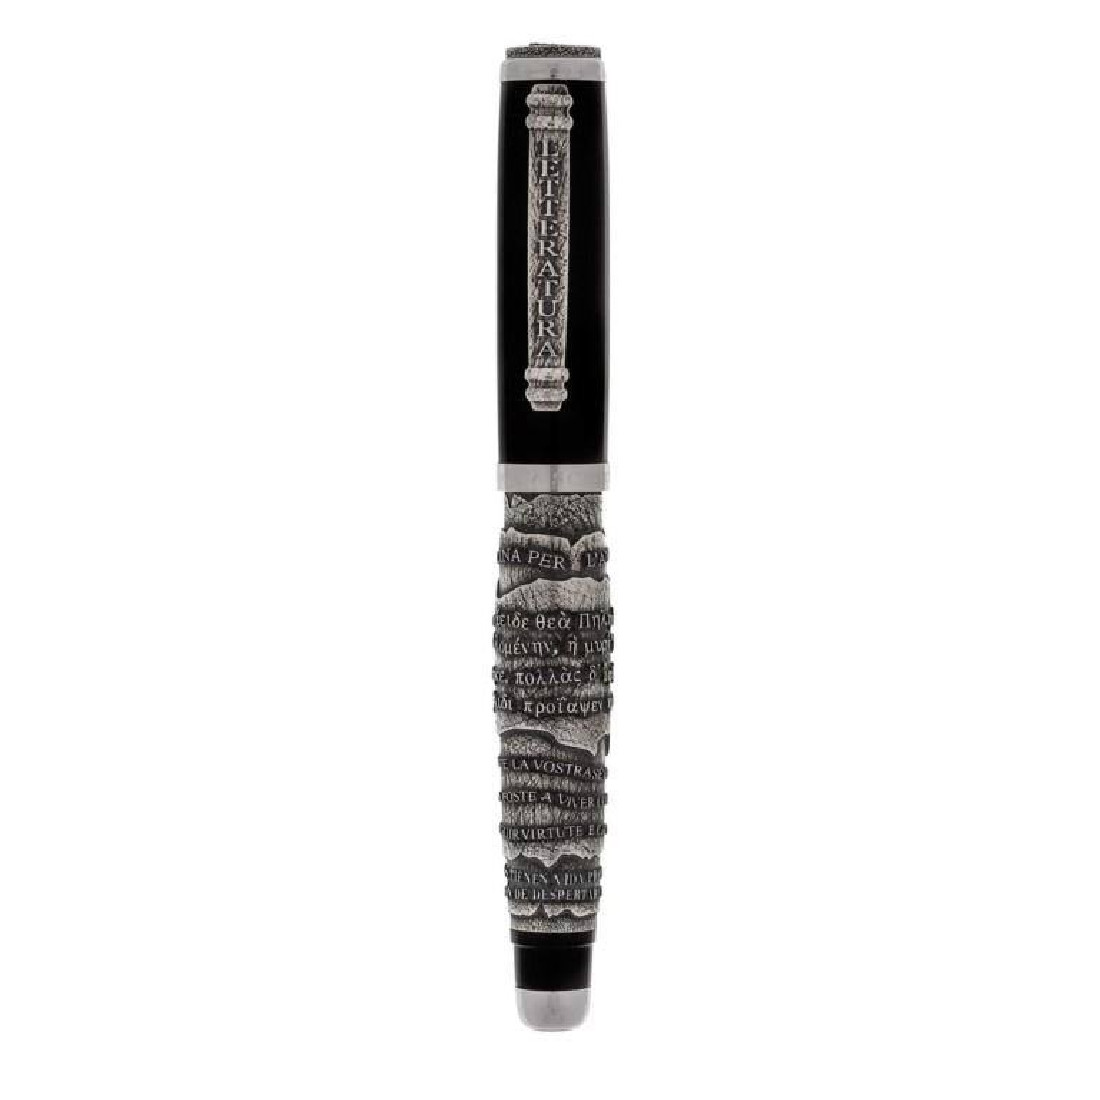 Scribo LETTERATURA Limited Edition fountain pen